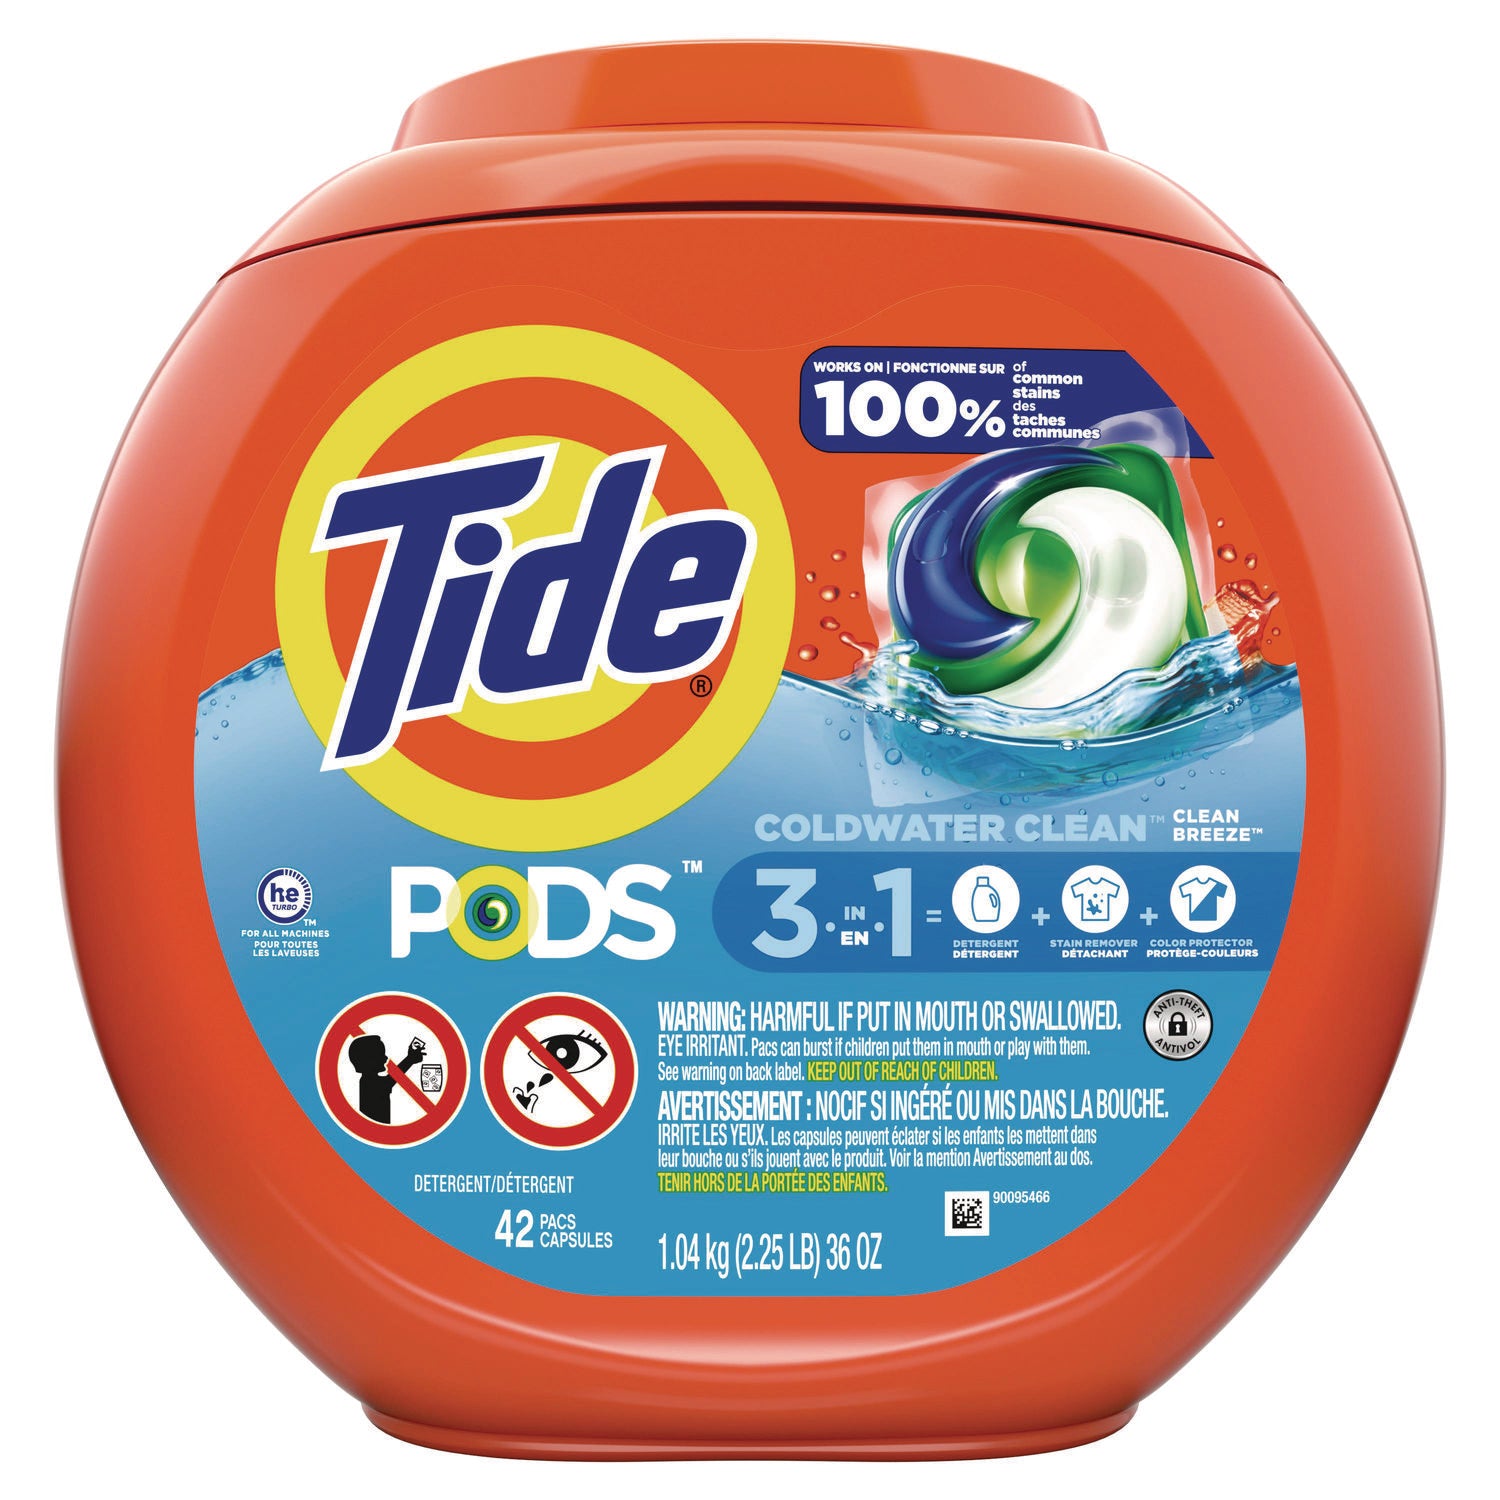 pods-laundry-detergent-clean-breeze-36-oz-tub-42-pacs-tub-4-tubs-carton_pgc00998ct - 1